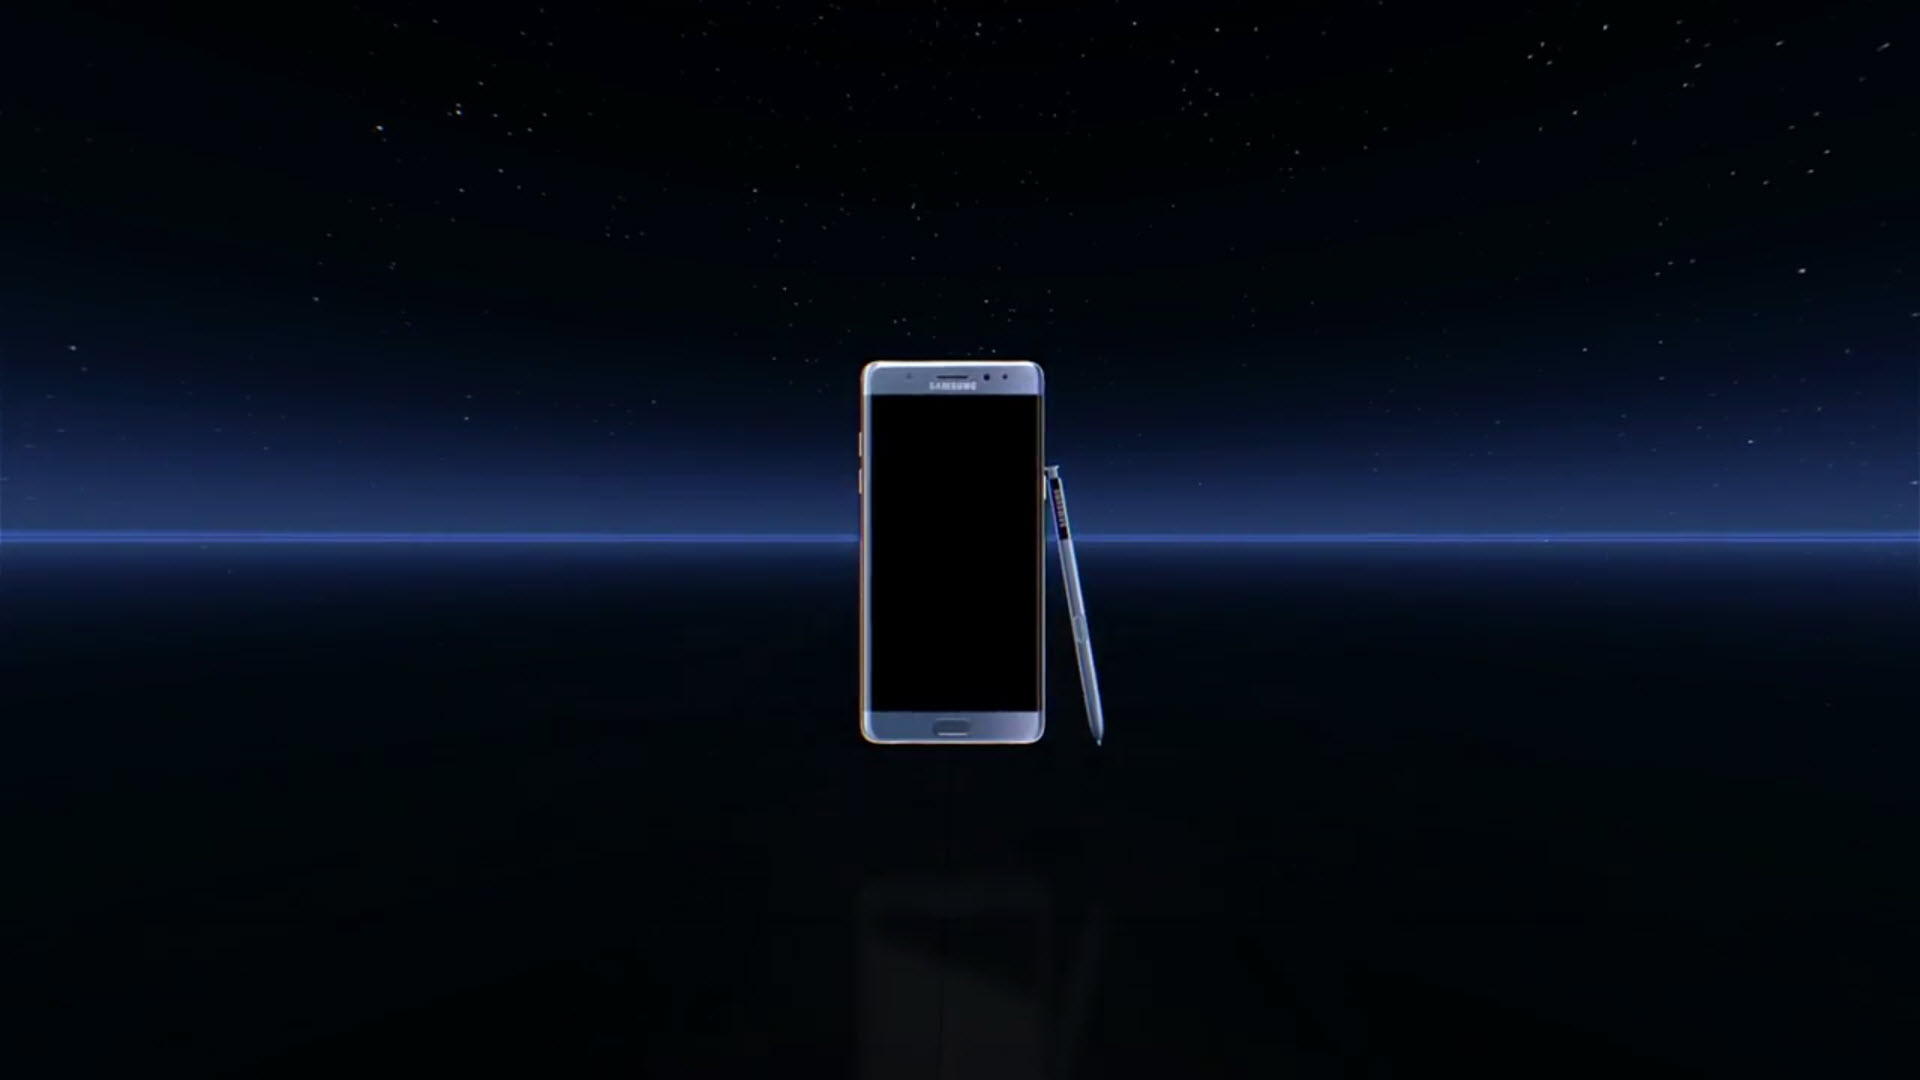 เปิดตัวไม่ธรรมดา!!! Samsung เปิดตัว Galaxy Note 7 ในโลกเสมือนจริง (VR) ด้วย Gear VR